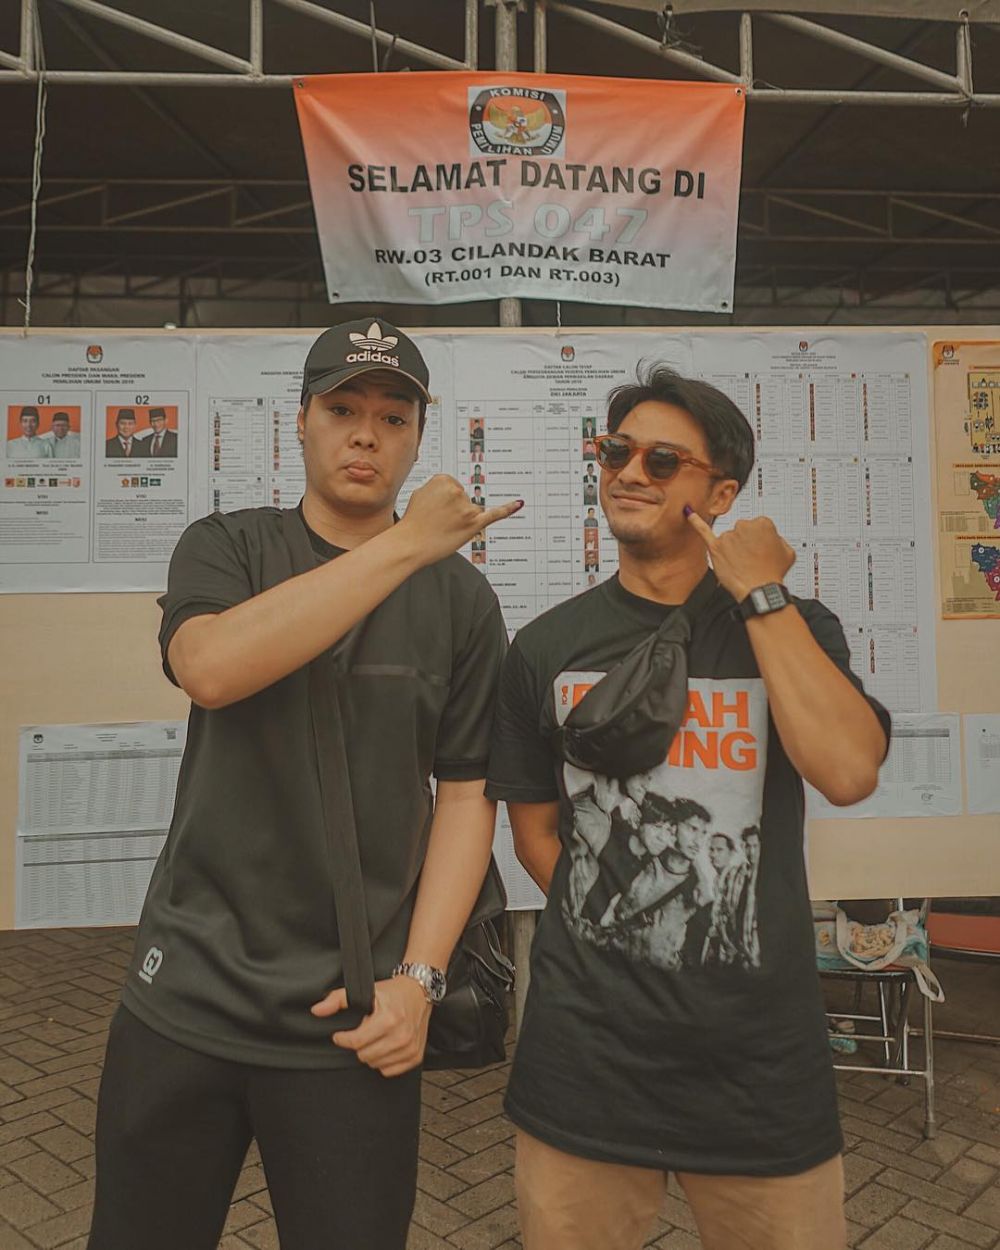 12 Potret kompak Ricky Harun dan Jeje Soekarno, brother goals